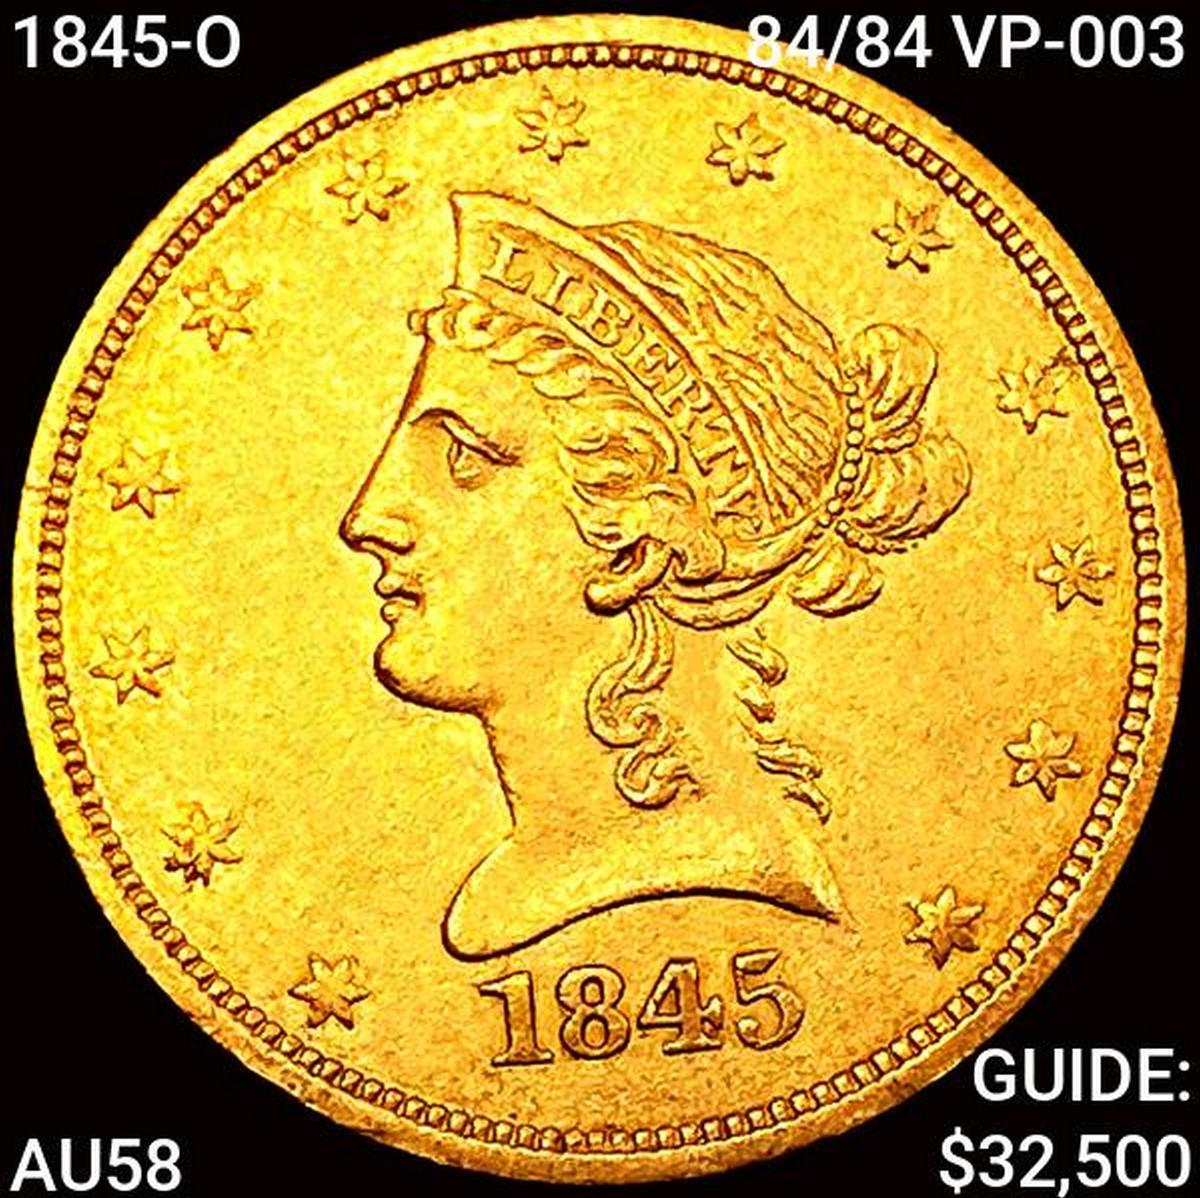 1845-O 84/84 VP-003 $10 Gold Eagle CHOICE AU